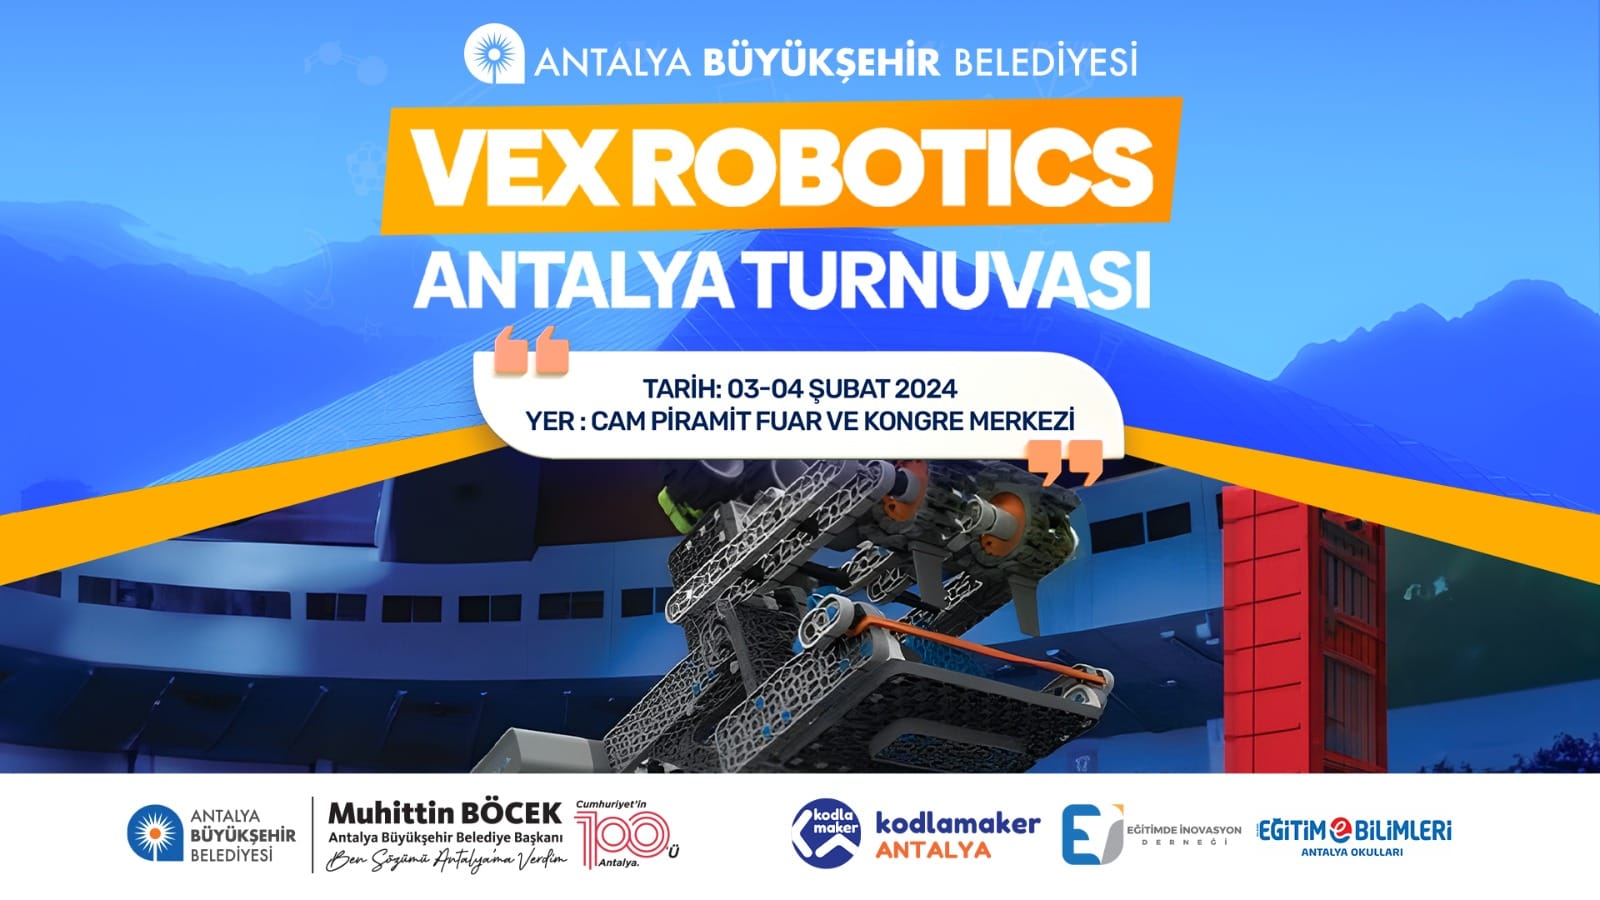 Büyük Robotik Turnuvası, Antalya'da Cam Piramit'te Düzenlenecek!